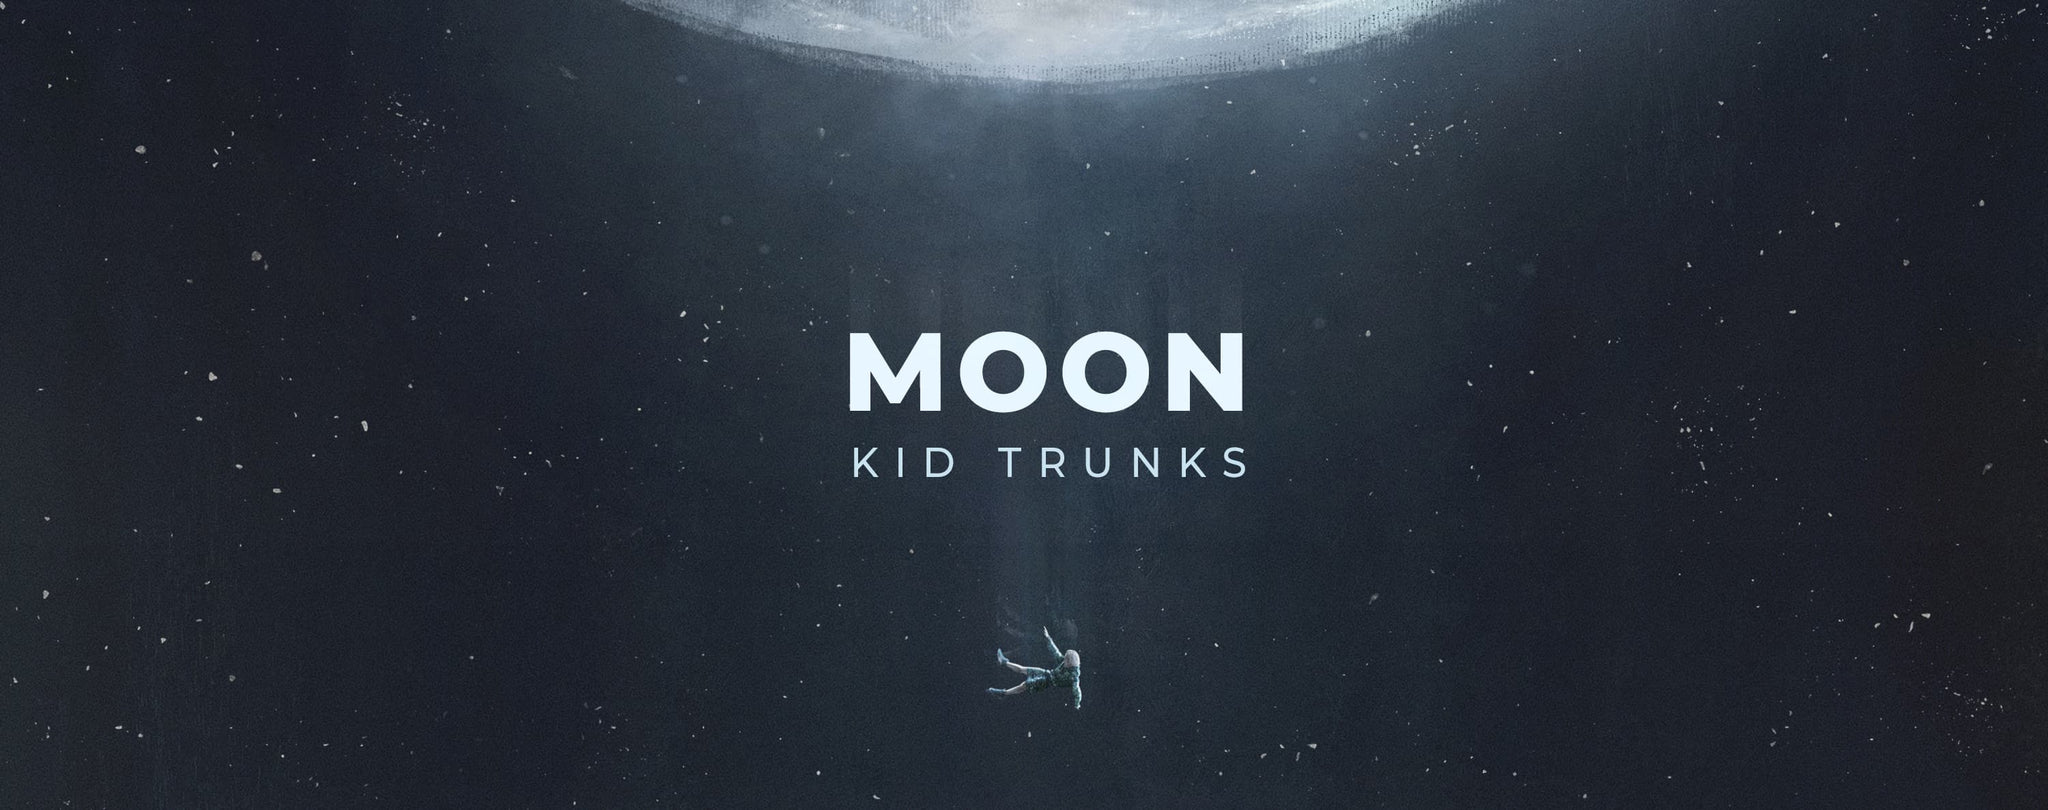 Kid Trunks - Moon Bundles